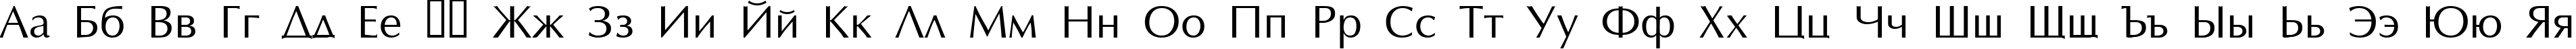 Пример написания русского алфавита шрифтом Opus